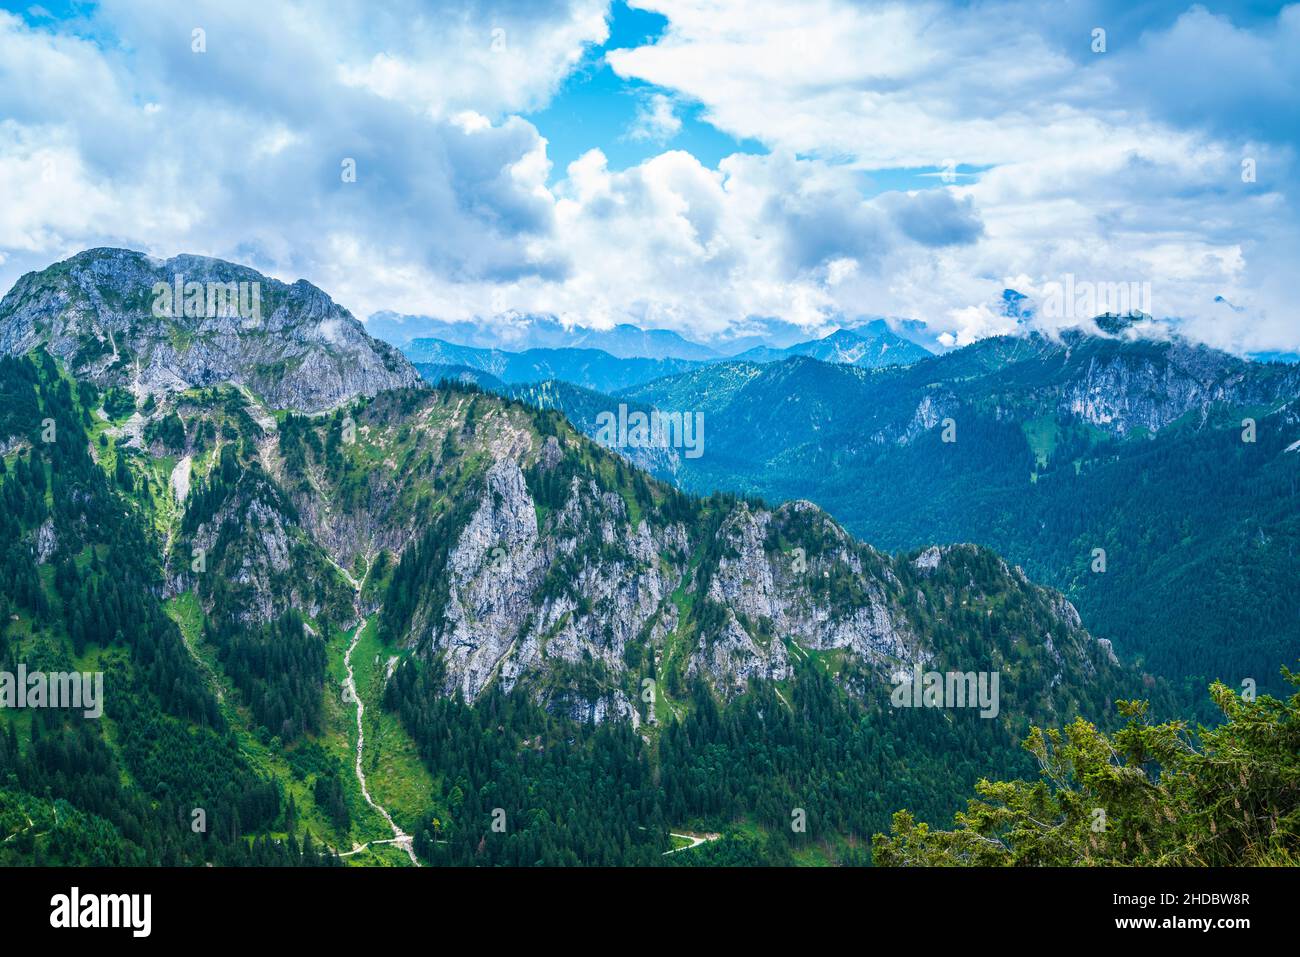 Alemania, Tegelberg vista de la cima de la montaña en el paisaje natural de allgaeu bávaro en la cresta de la montaña de los alpes, un paraíso para el senderismo Foto de stock